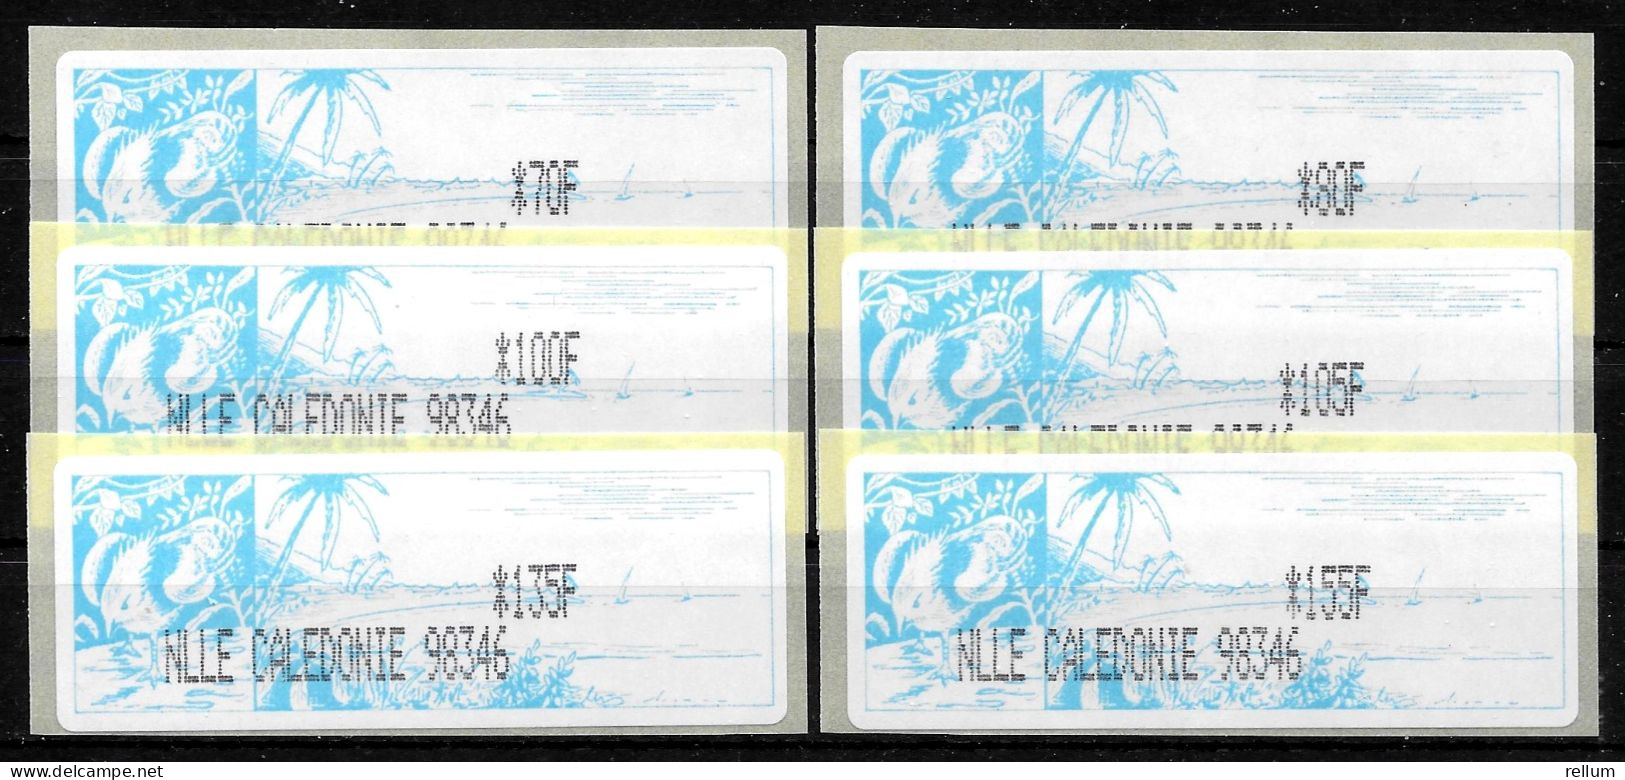 Nouvelle Calédonie 2003 Distributeur - Yvert Et Tellier Nr. 3 - Michel Nr. ATM 1f ** - Timbres De Distributeurs